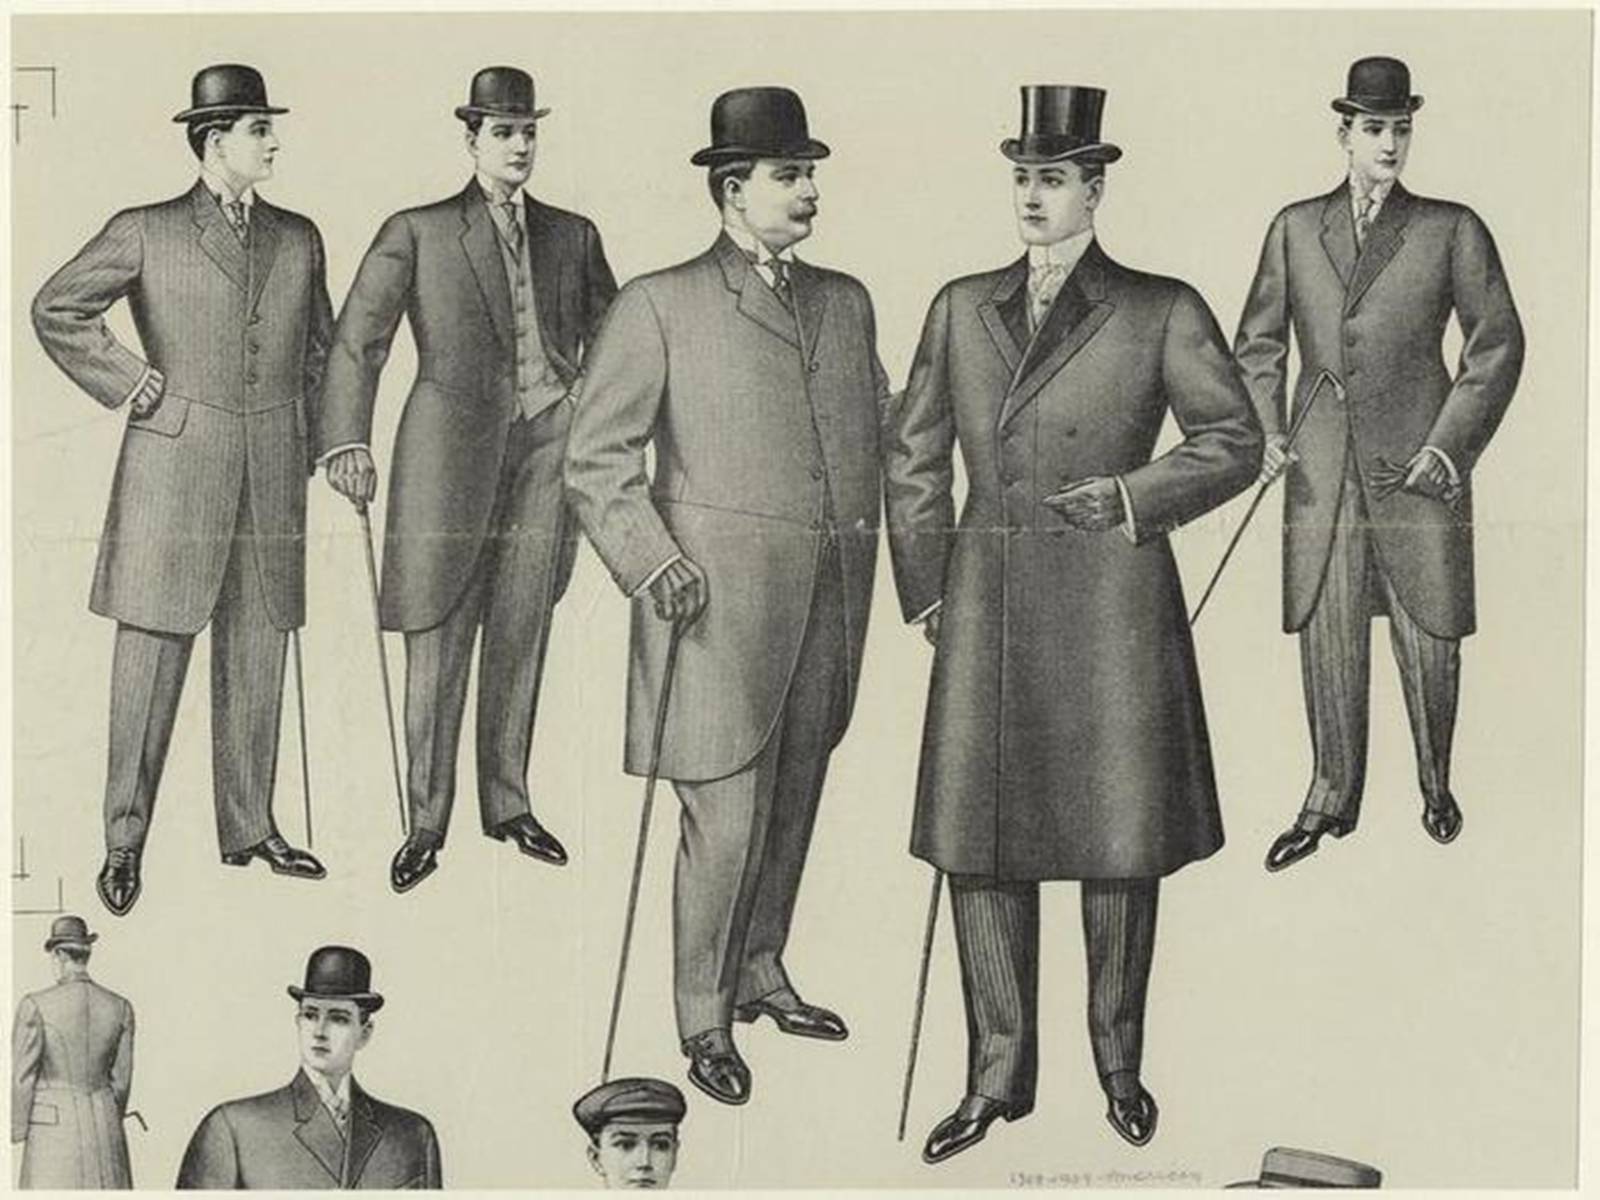 История одежды мужчин. Мужская мода 19 века в Англии. Мода конца 19 века в Англии мужская. Джентльмены 19 века Викторианская эпоха. Мужская мода конца 19 века.